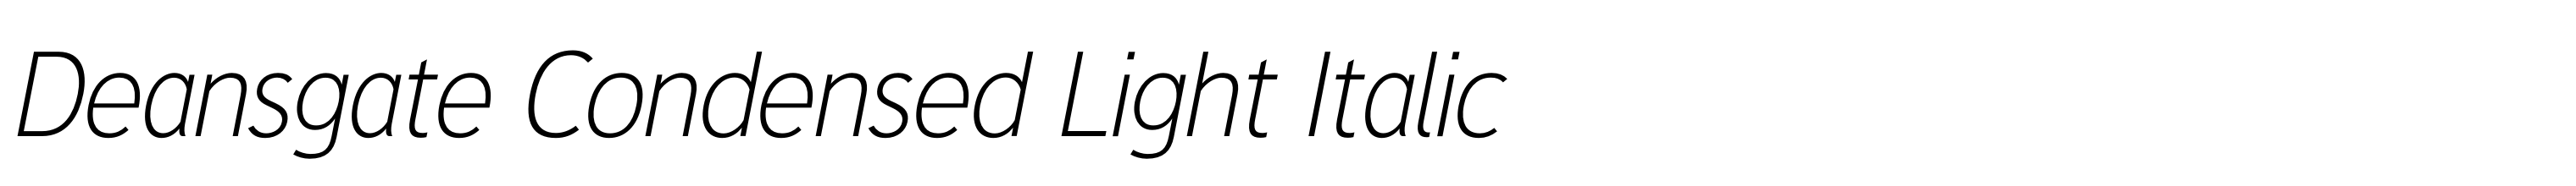 Deansgate Condensed Light Italic